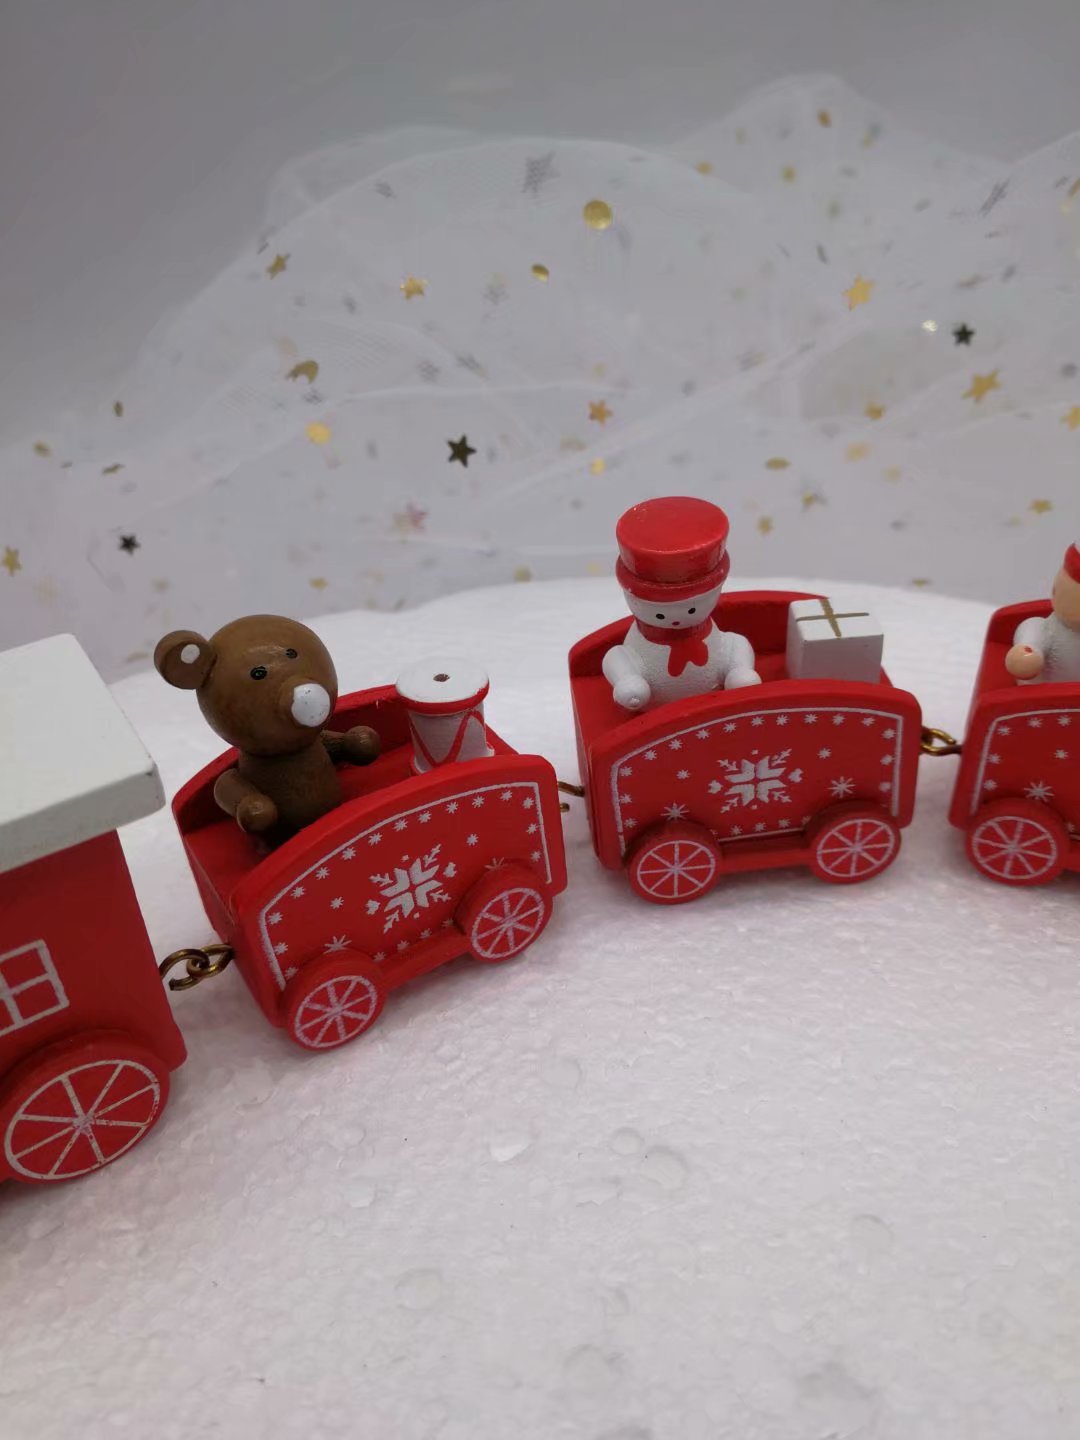 圣诞节火车由姜饼制成 库存图片. 图片 包括有 愉快, 巴西, 蛋糕, 极性, 结冰, 祝贺, 机车, 曲奇饼 - 35331185